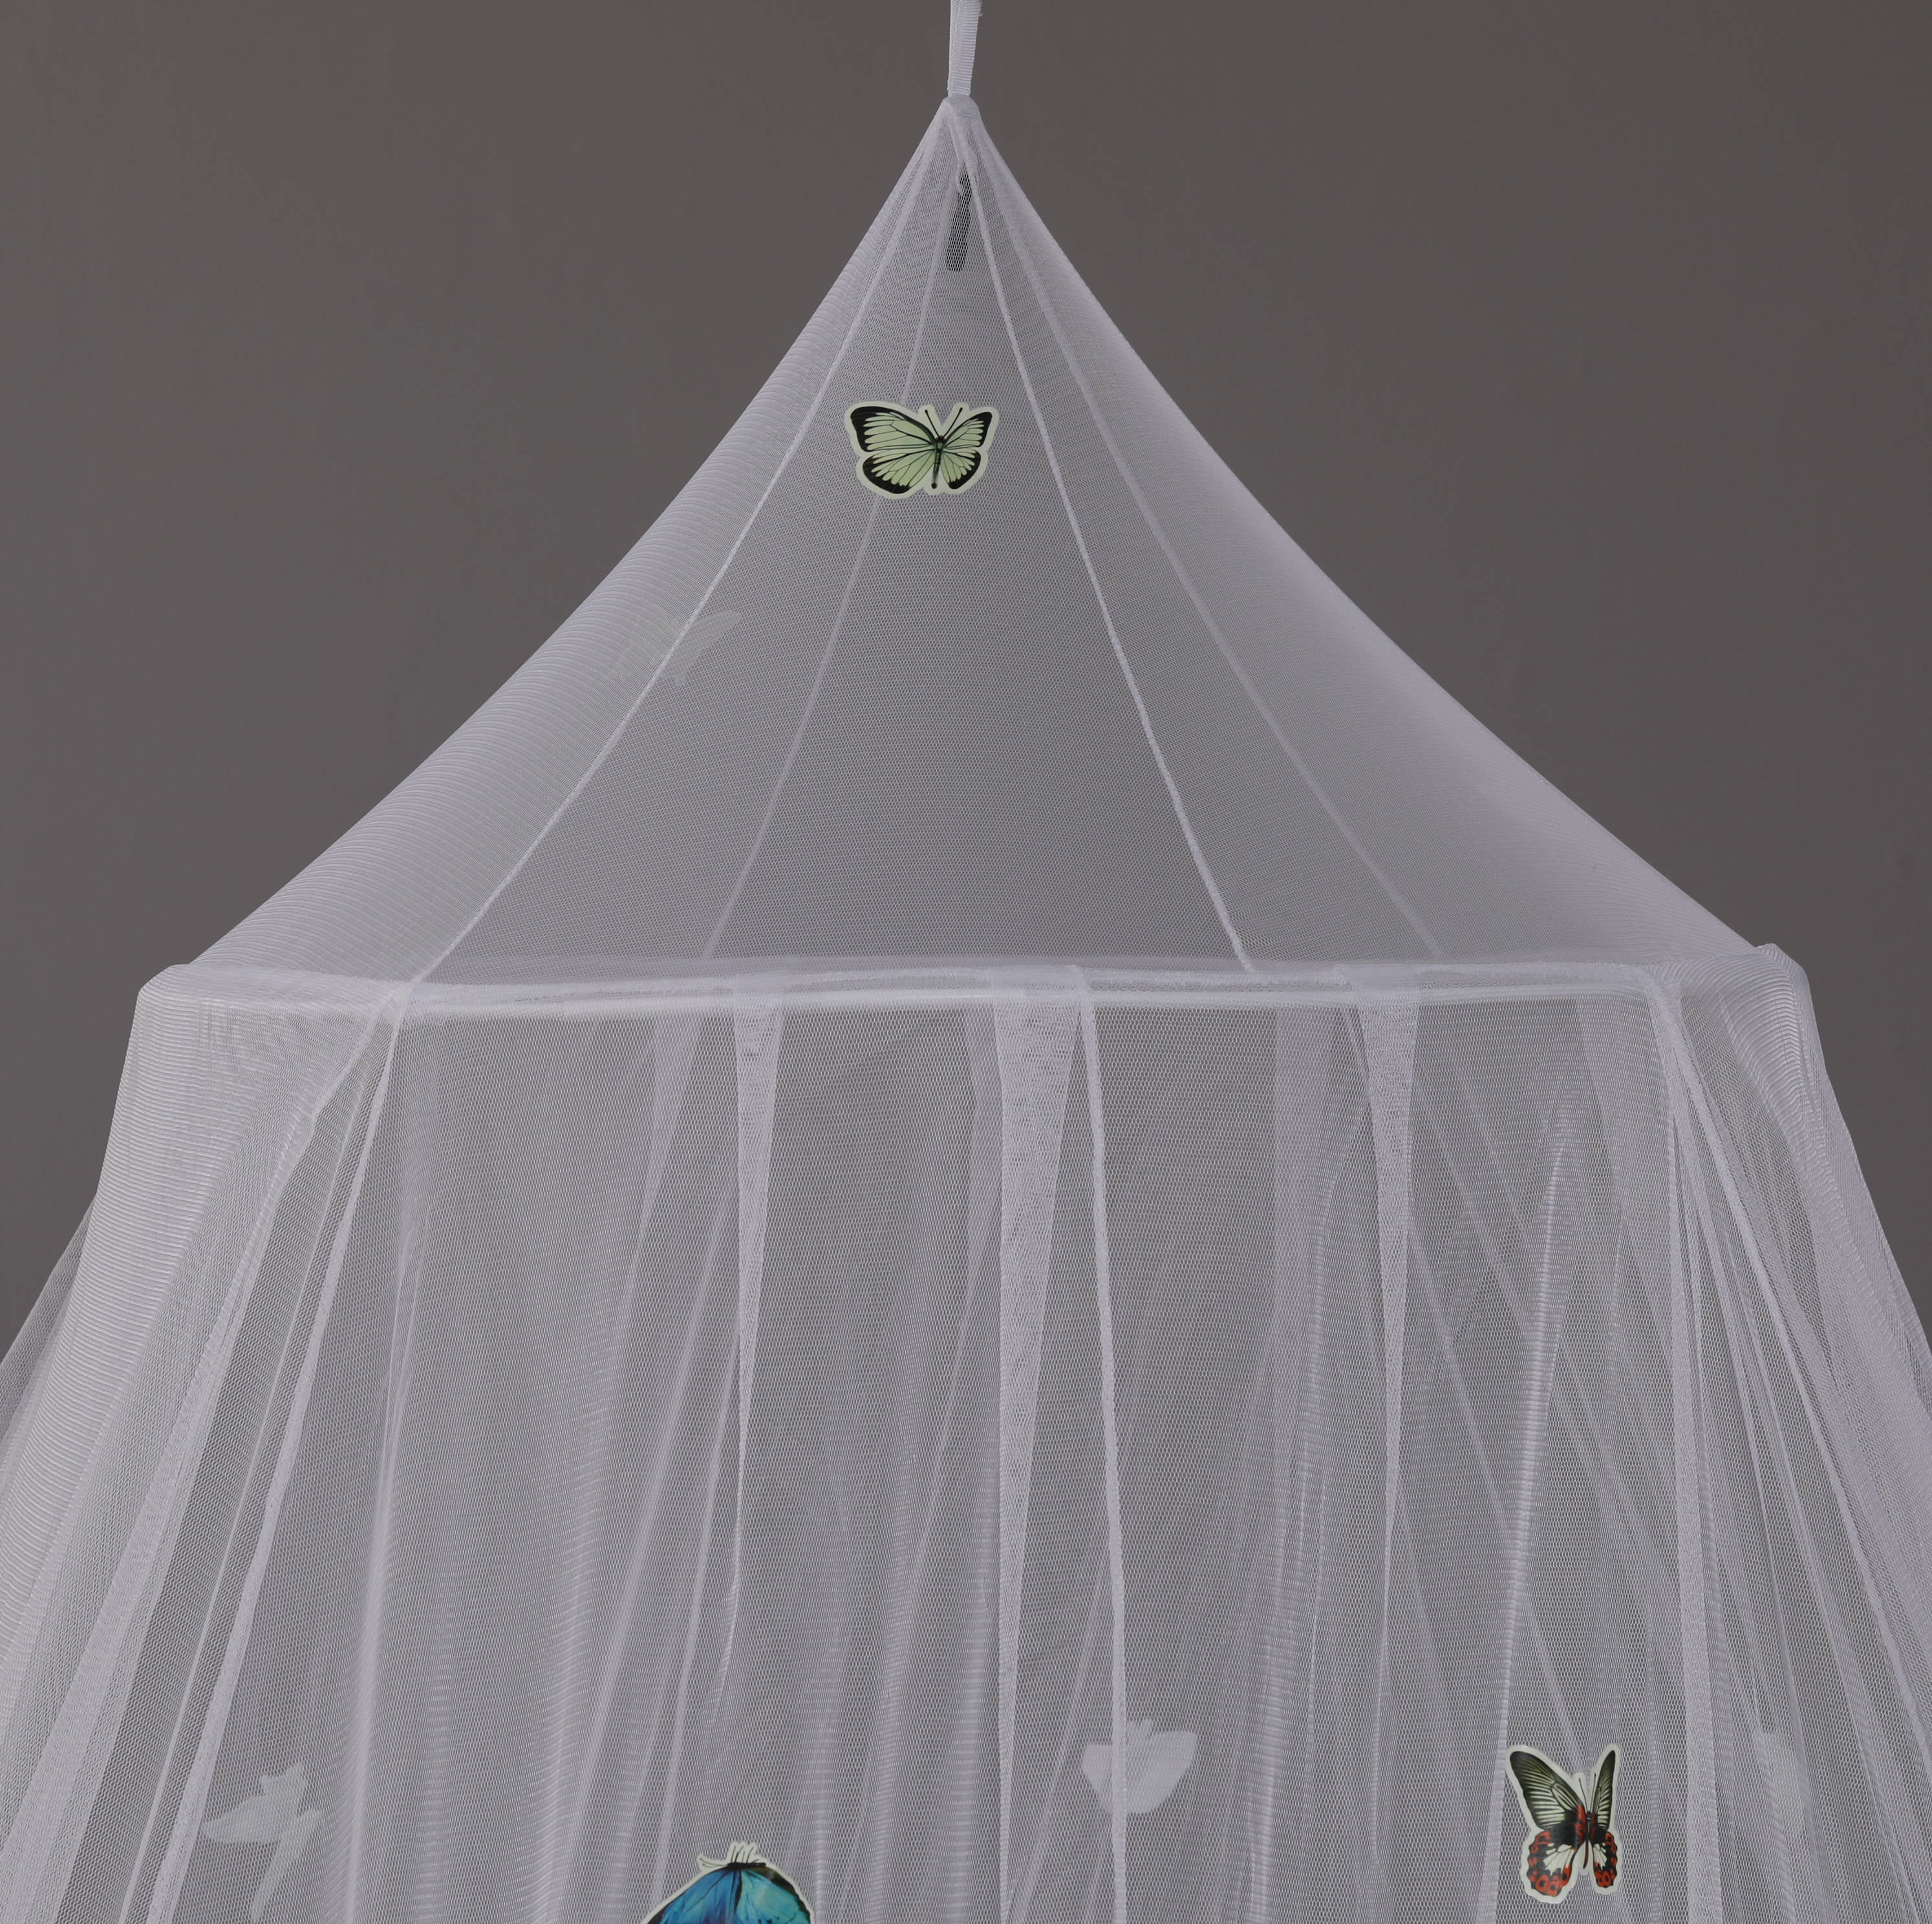 Neues Design Heimtextilien Bettbett wächst im Dunkeln leuchtendes Schmetterlings-Moskitonetz